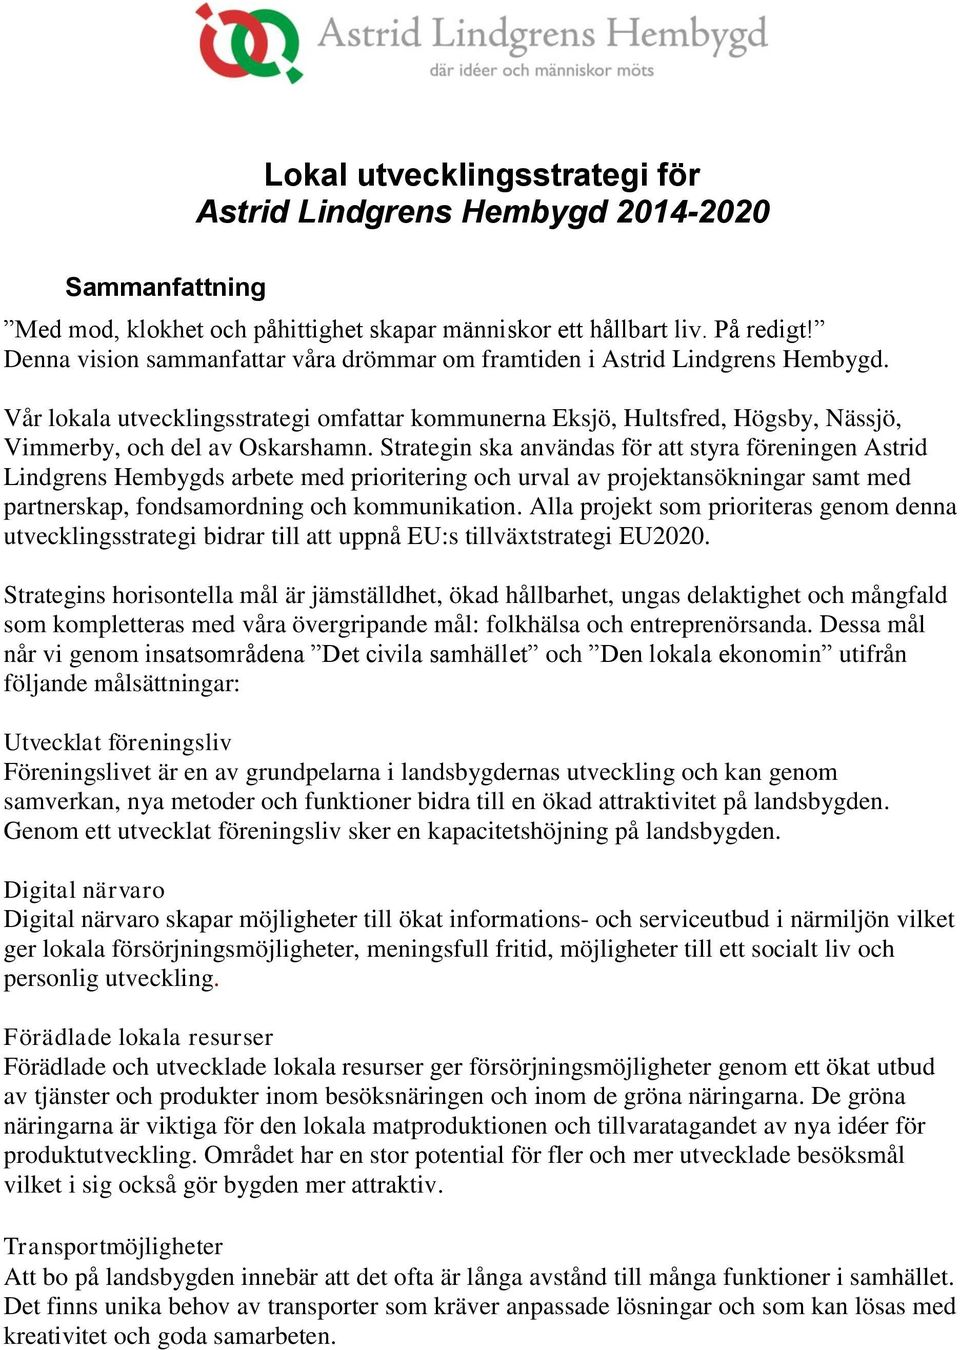 Strategin ska användas för att styra föreningen Astrid Lindgrens Hembygds arbete med prioritering och urval av projektansökningar samt med partnerskap, fondsamordning och kommunikation.